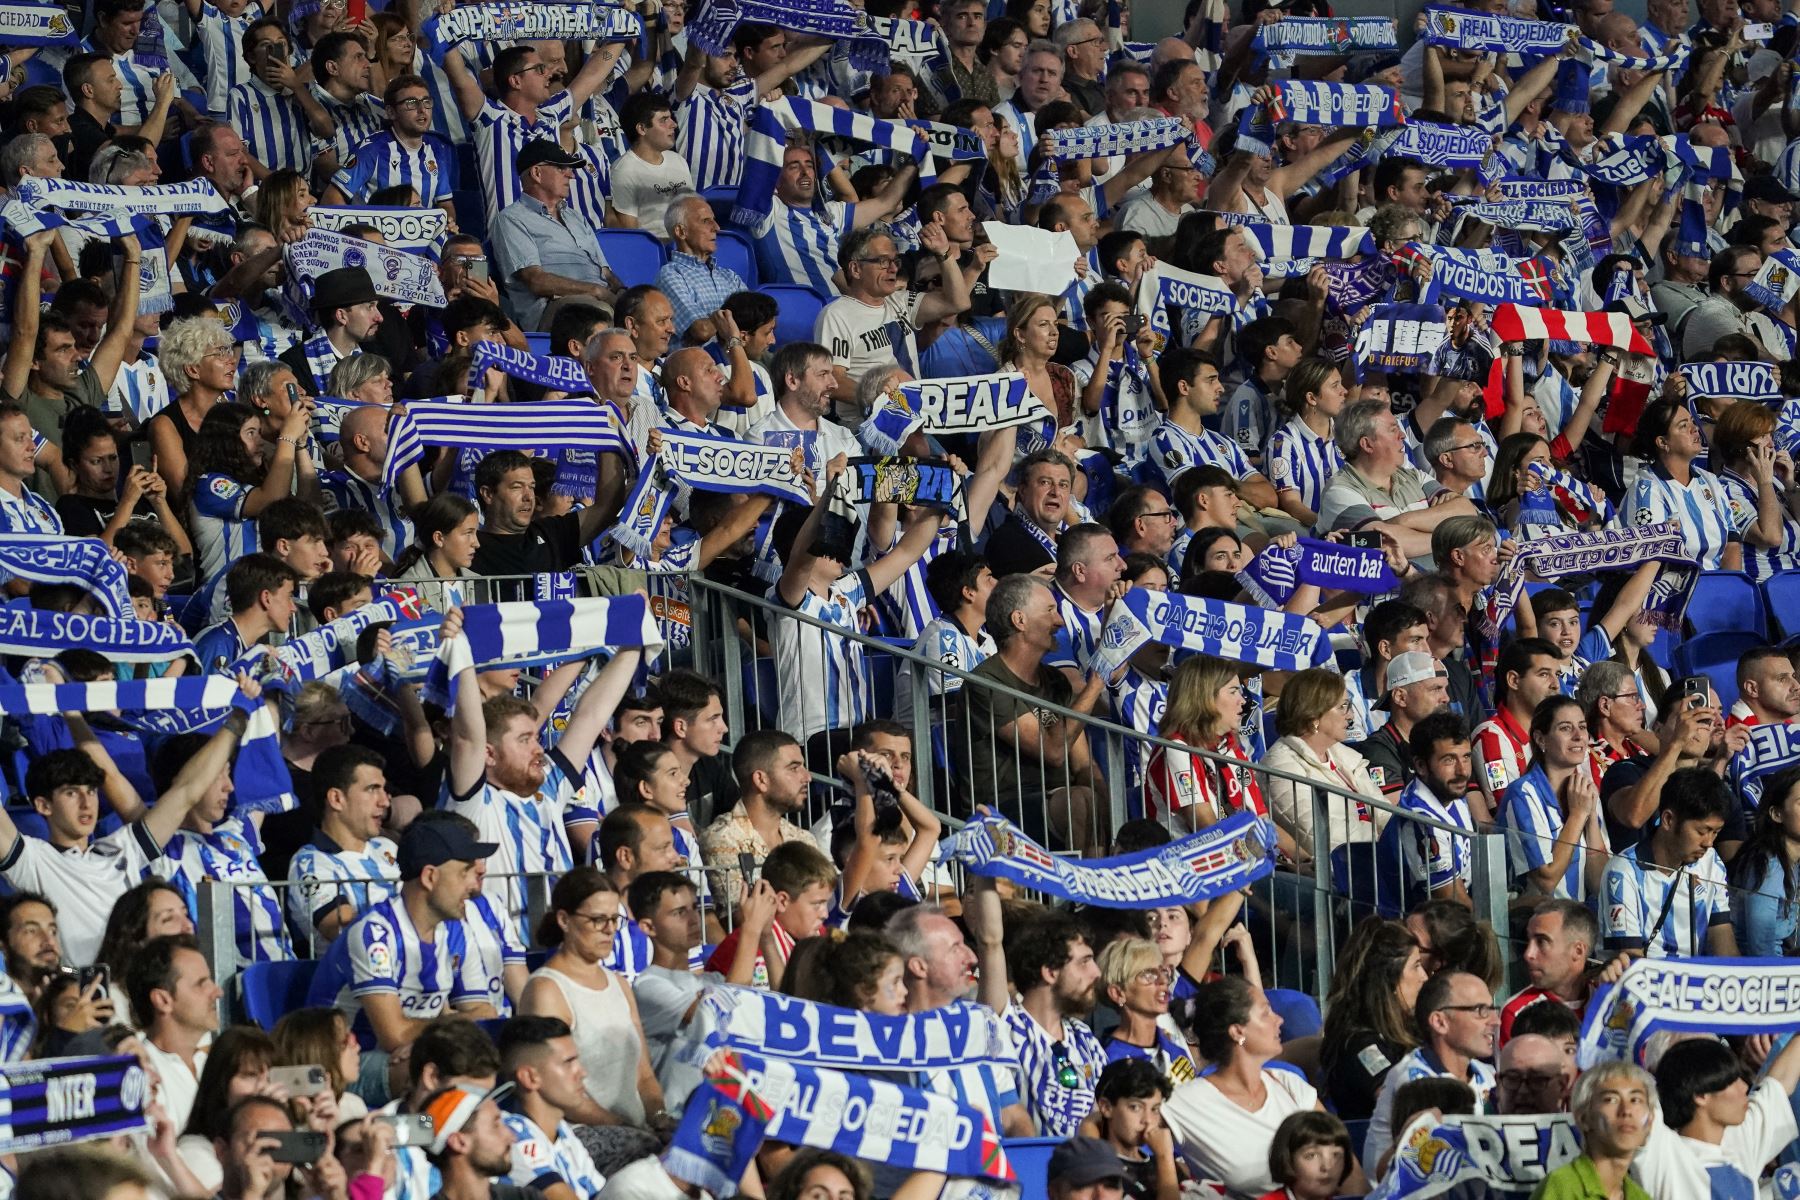 Los seguidores de la Real Sociedad animan durante el partido de fútbol de la Liga española entre la Real Sociedad y el Athletic Club de Bilbao en el estadio de Anoeta en San Sebastián.
Foto: AFP